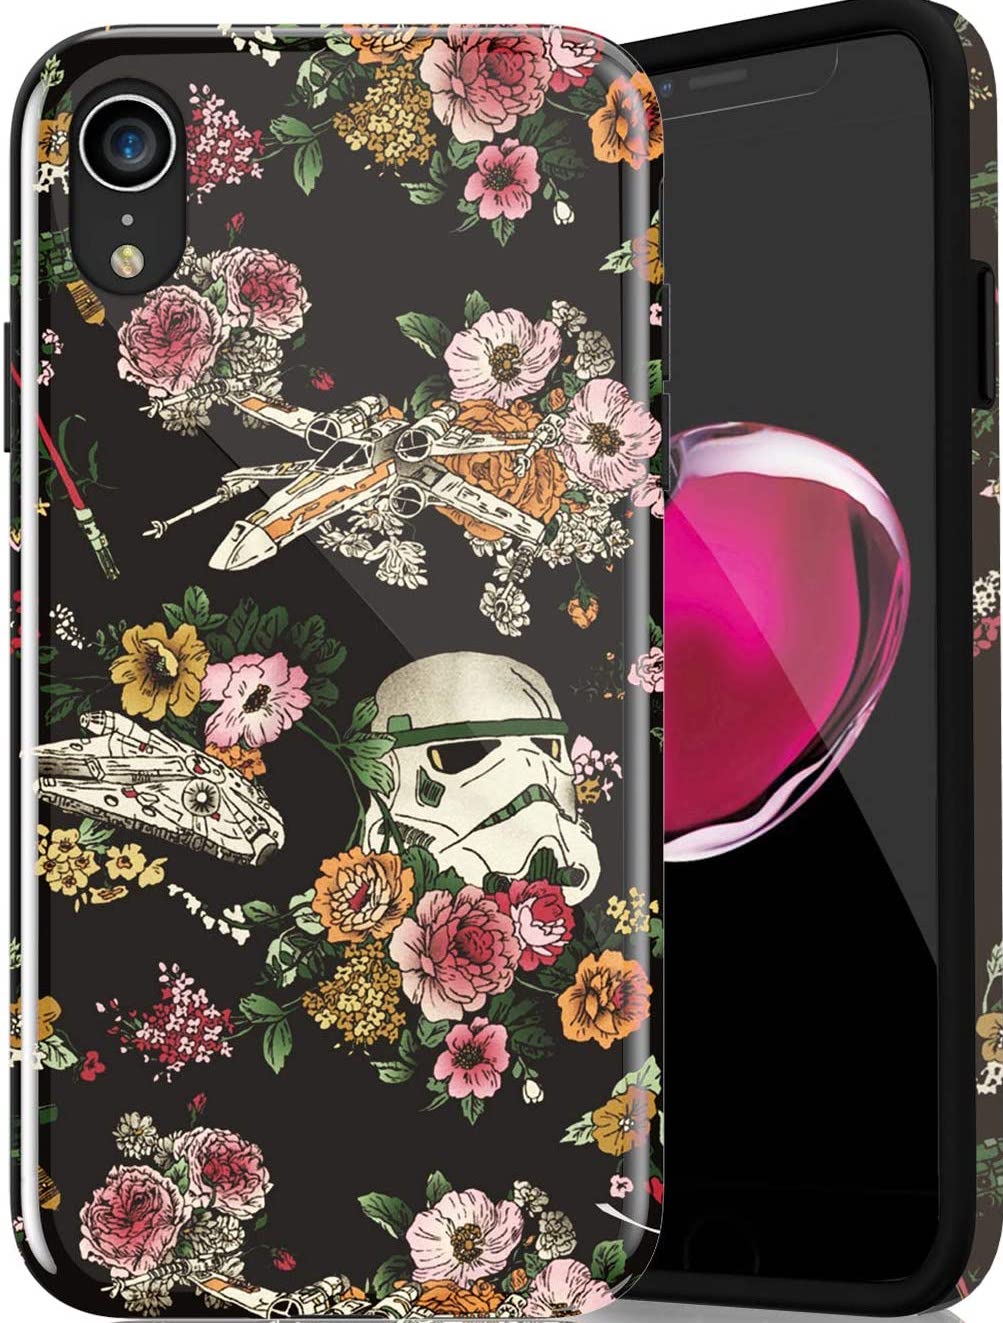 Floral Star Wars Case Render Cropped